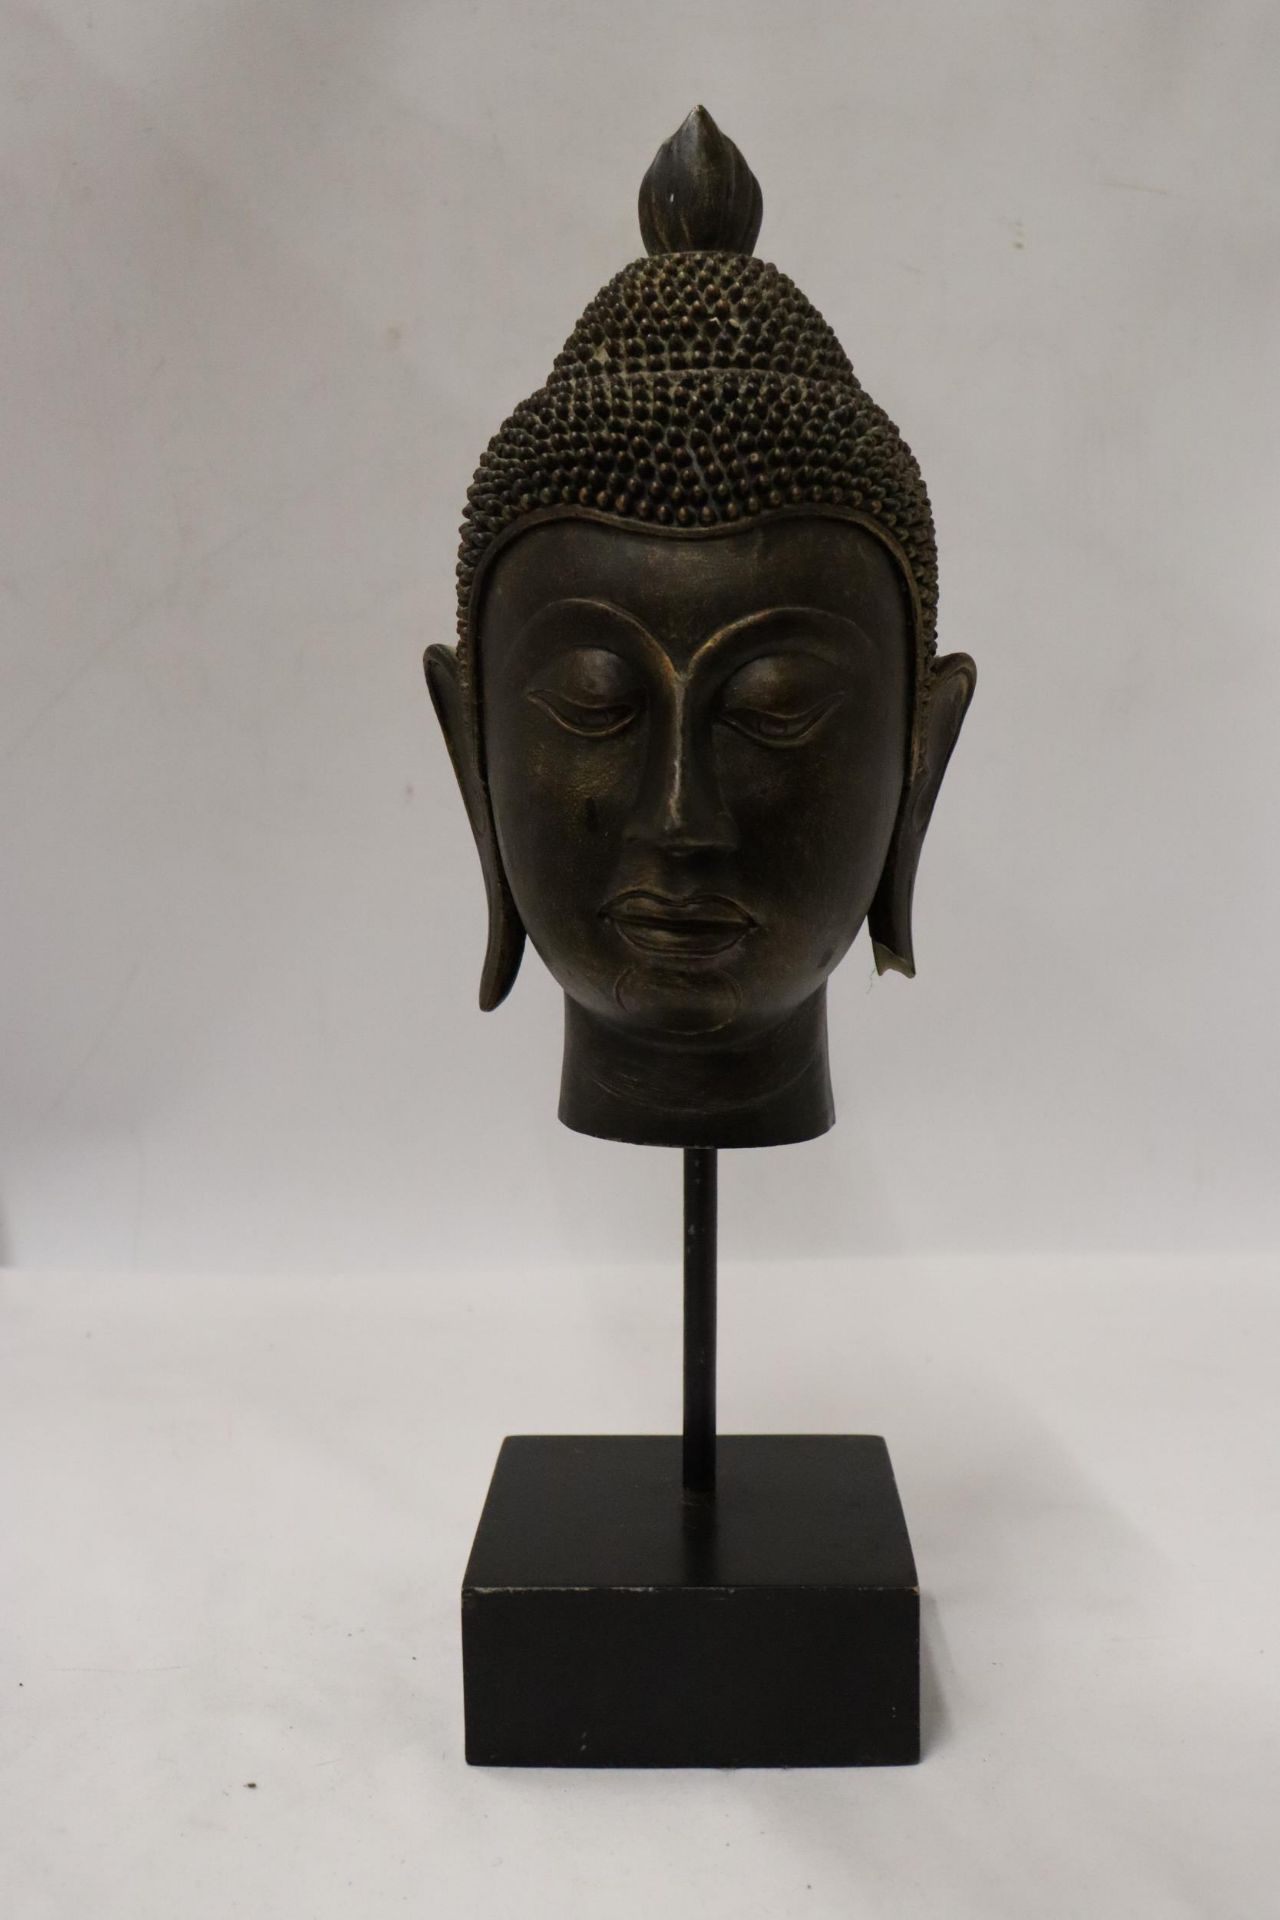 A BUDDAH'S HEAD ON A STAND, HEIGHT 36CM